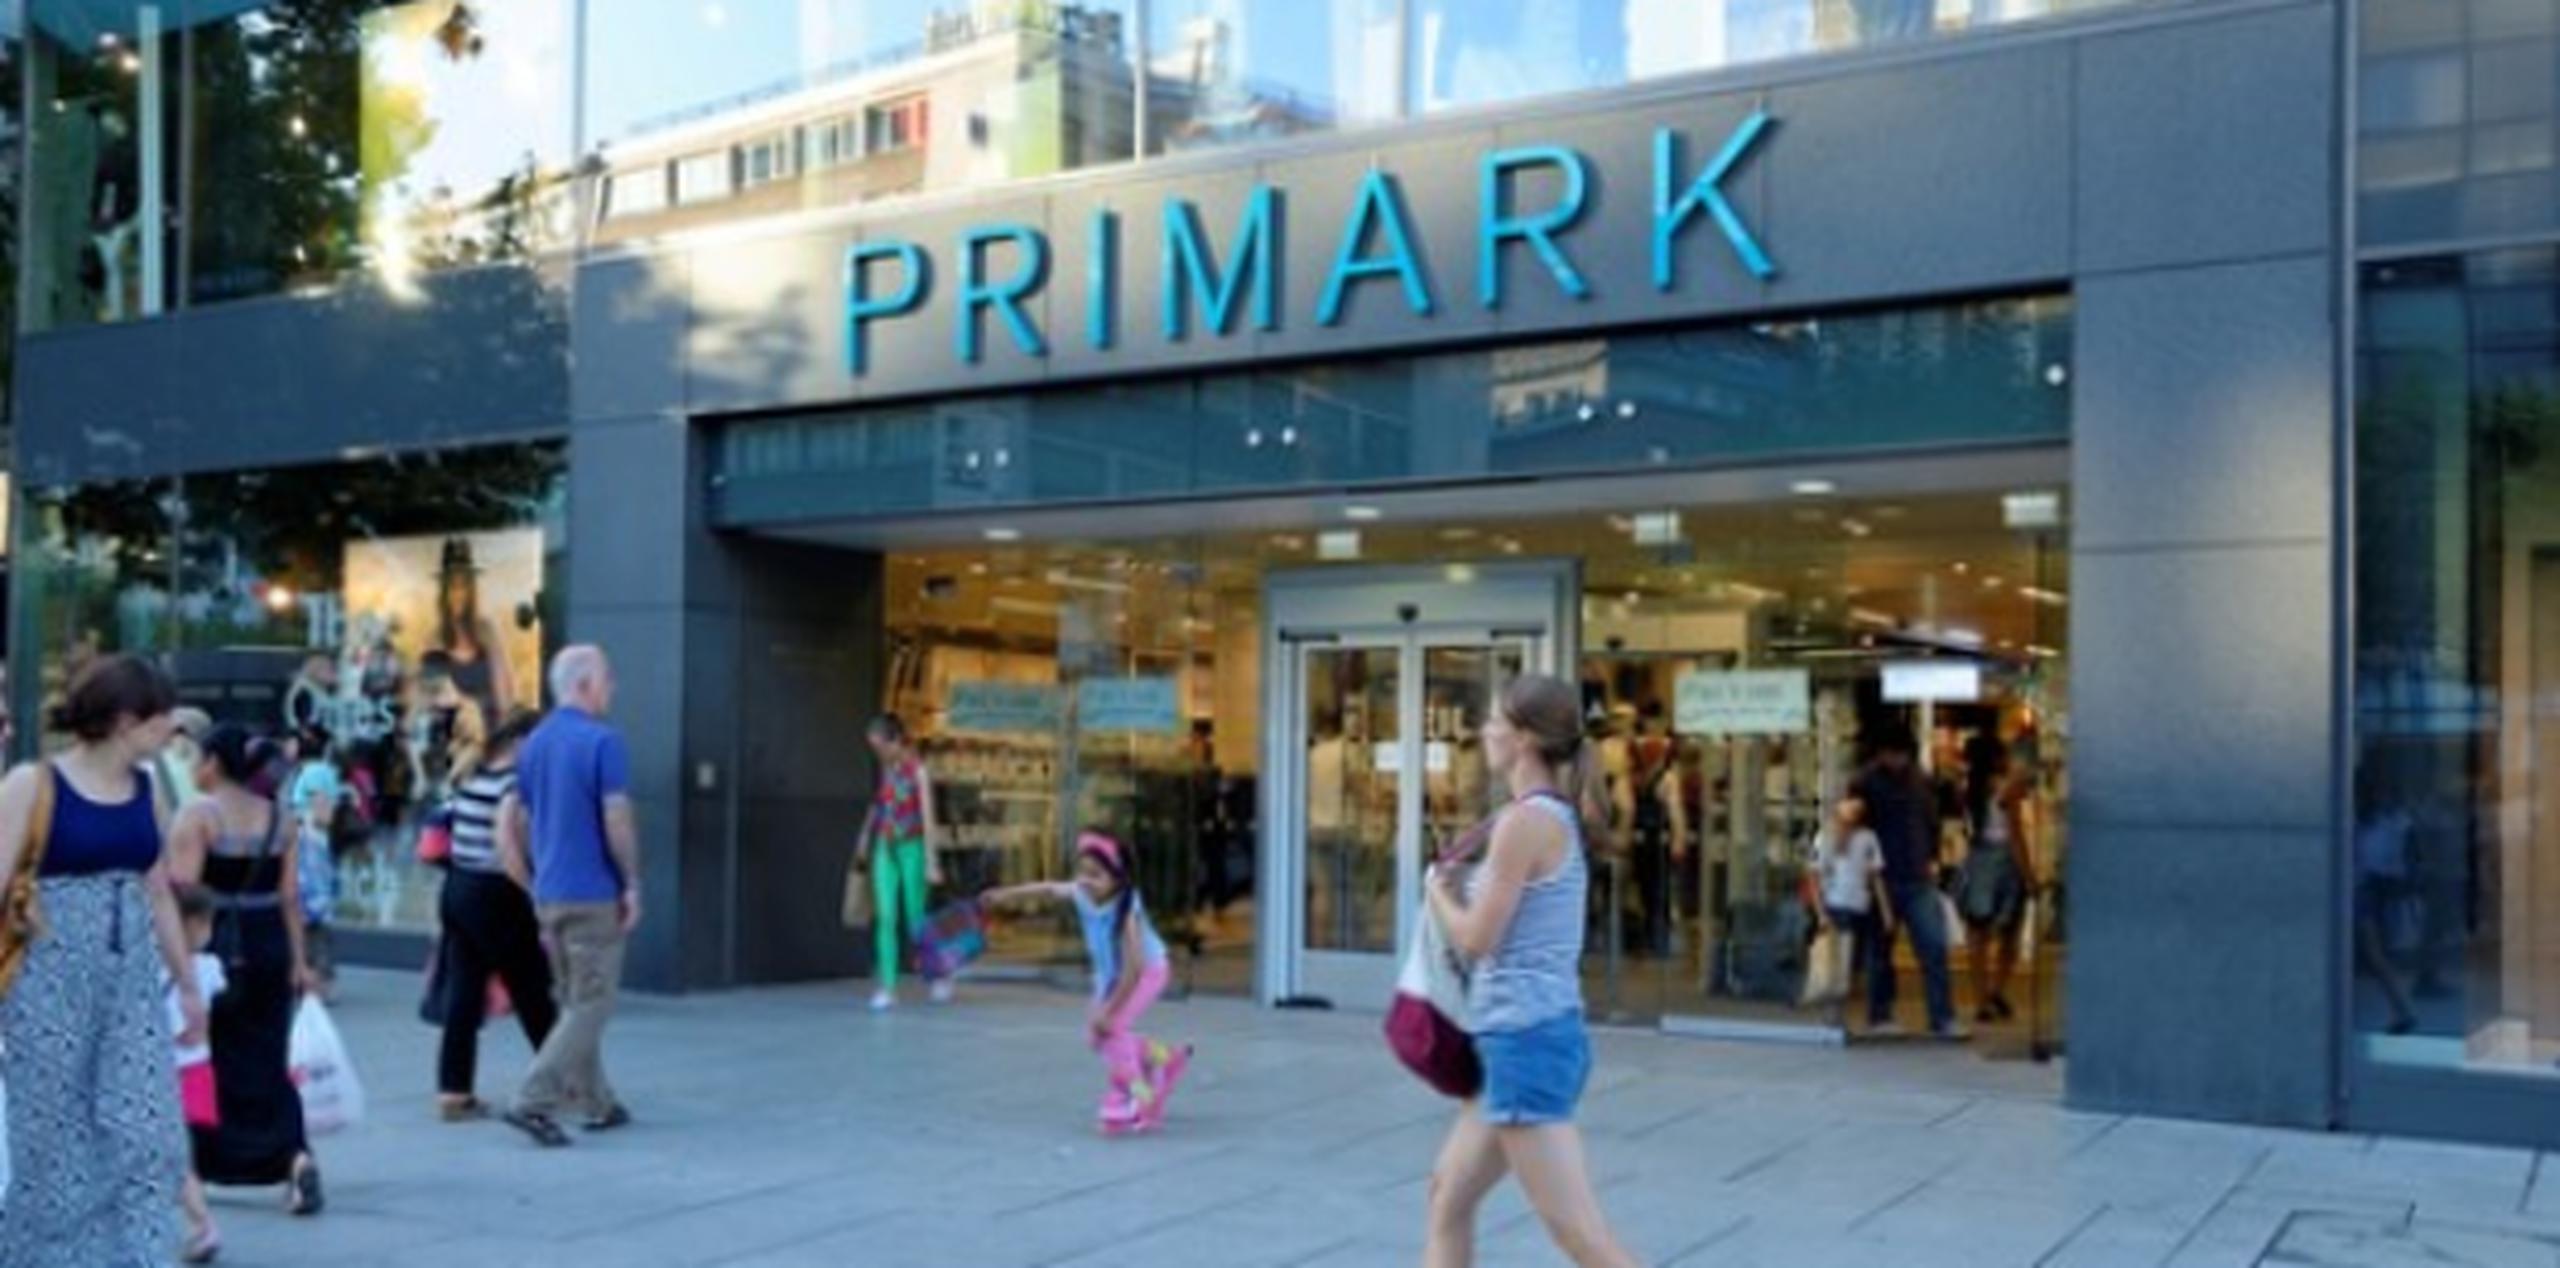 Un portavoz de Primark aseguró que "los niveles encontrados en las chanclas representaban un riesgo mínimo para la salud y la seguridad de los consumidores". (Shutterstock)